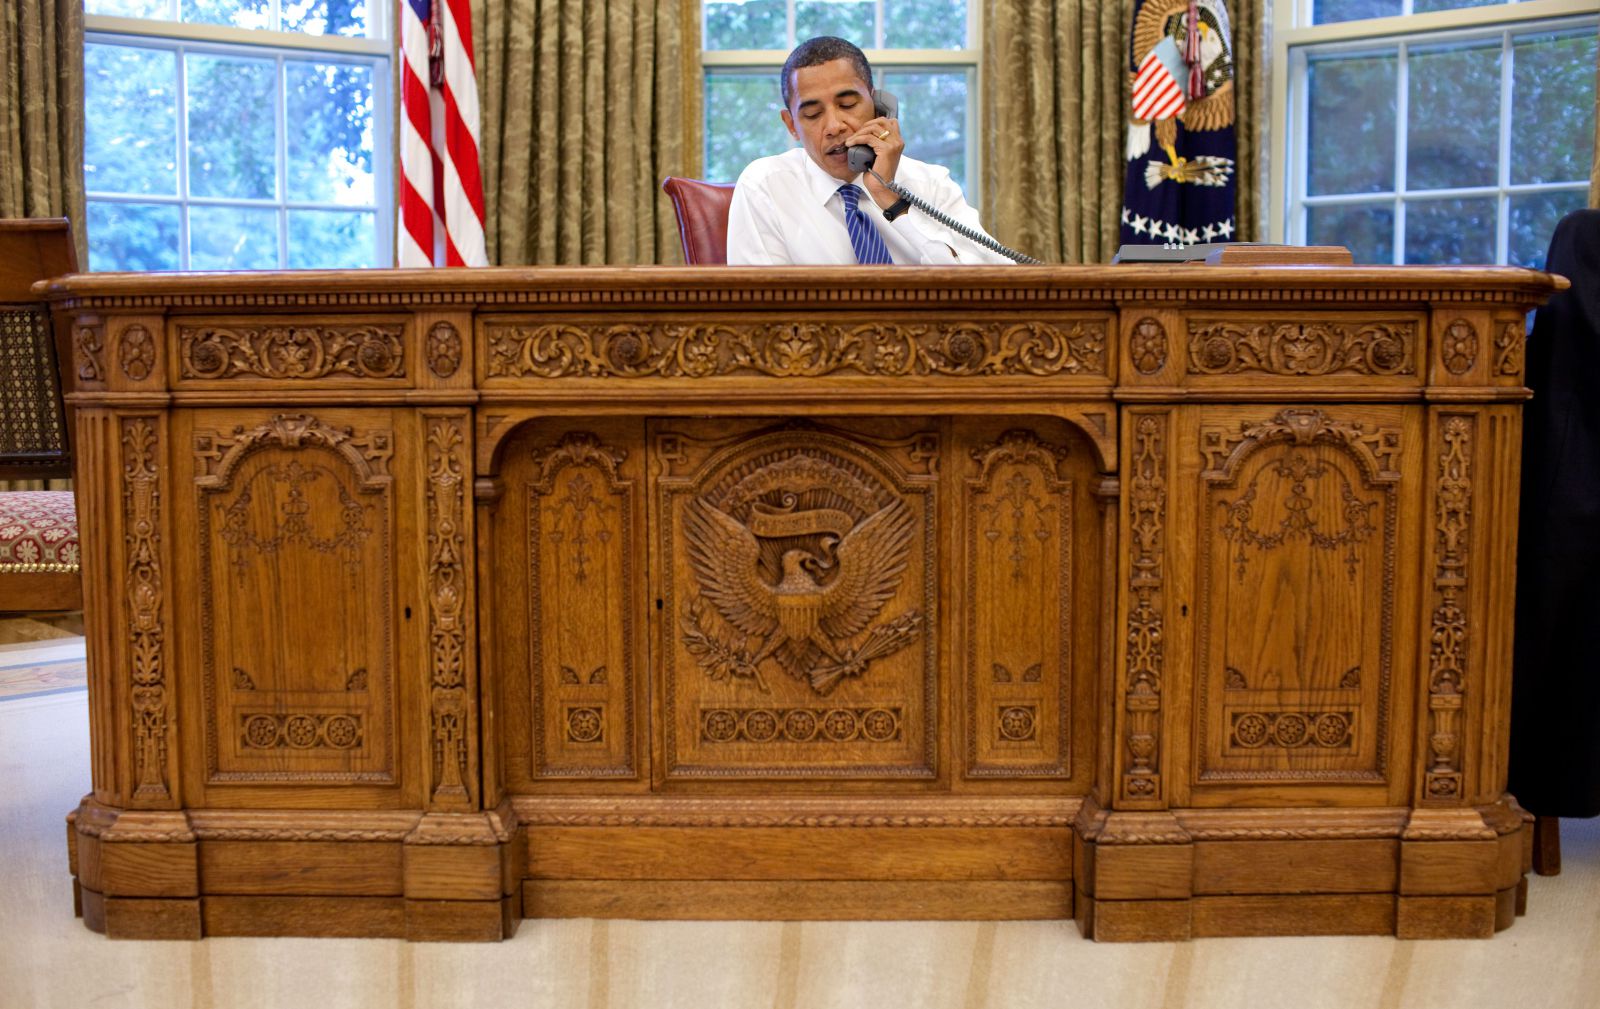 Obama at his Presidents Desk